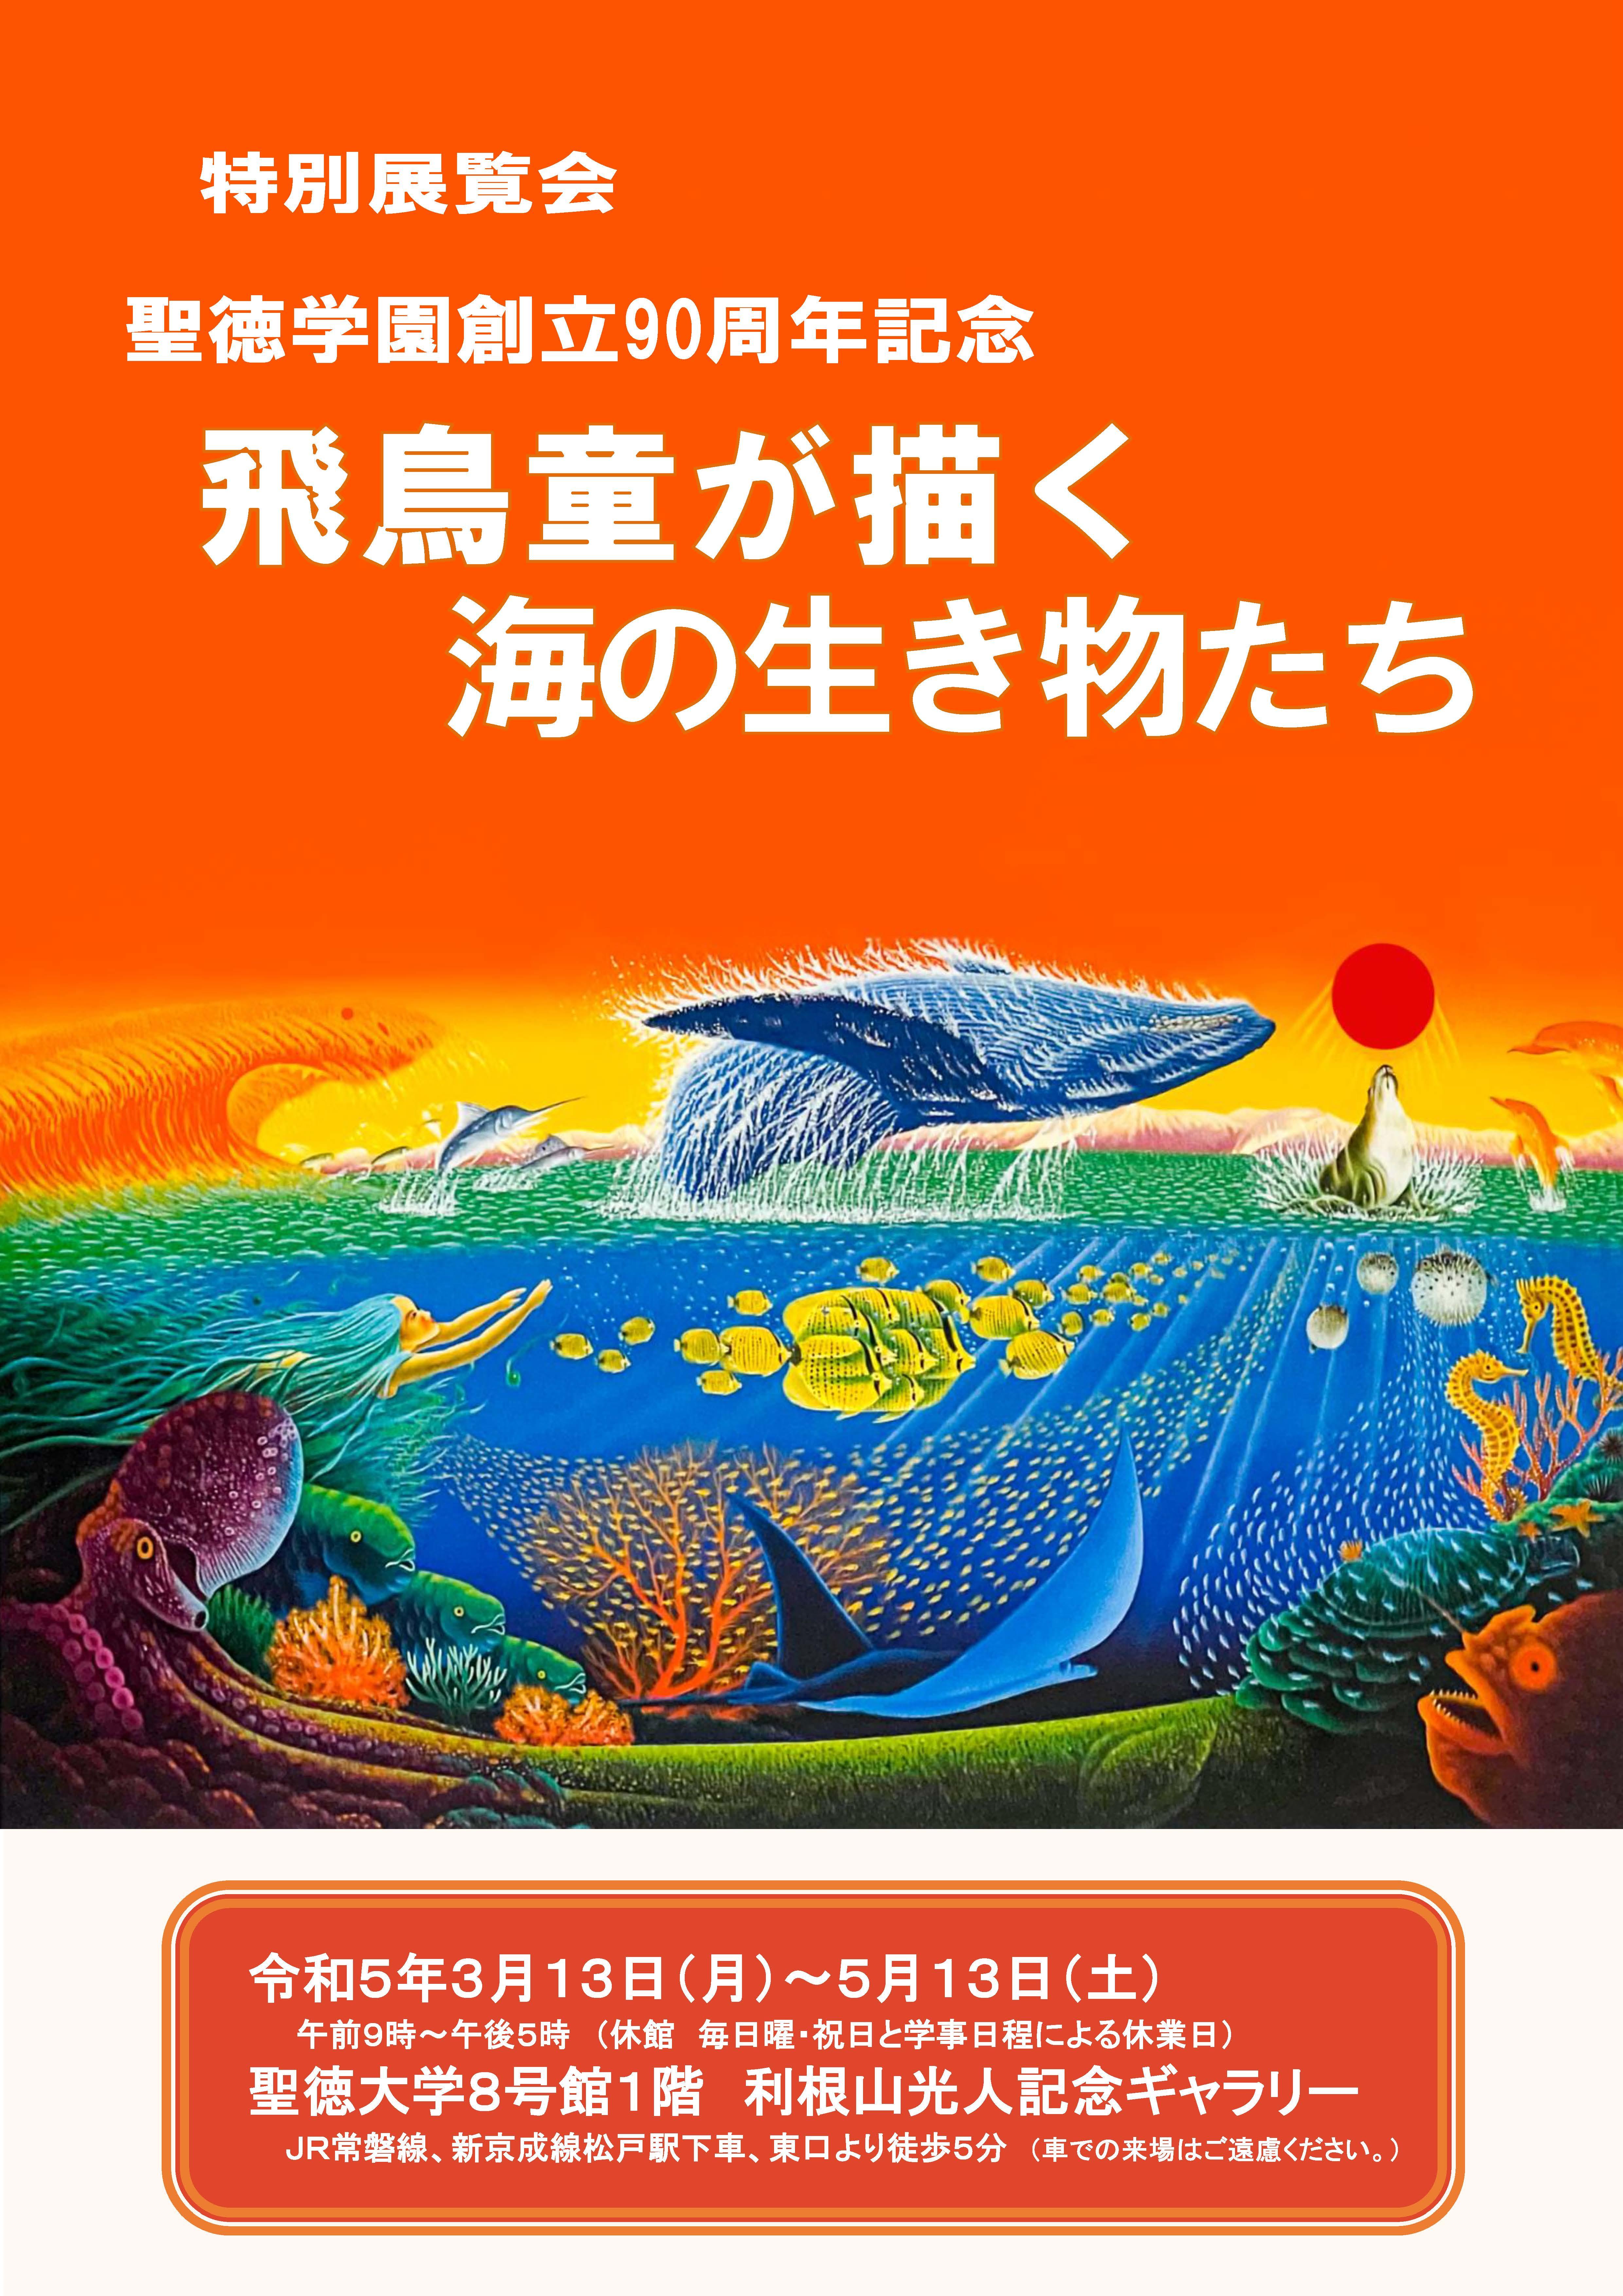 聖徳大学が「飛鳥童が描く海の生き物たち」ならびに「聖徳学園所蔵名品展」を開催中 -- 東京聖徳学園創立90周年を記念した特別展覧会